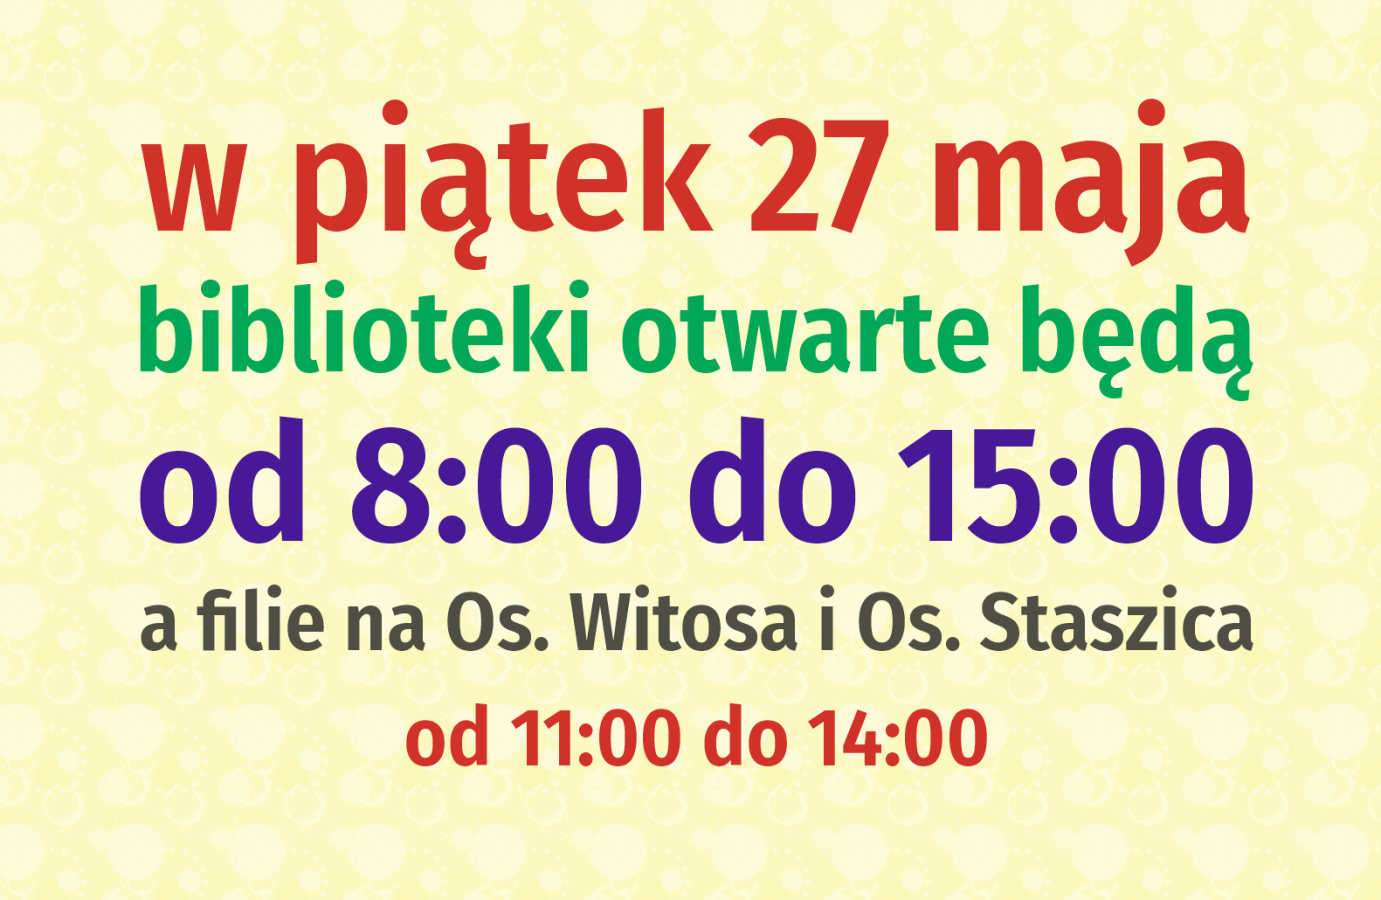  w piątek 27 maja filie biblioteczne otwarte będą w godz. 8:00 - 15:00, natomiast filie na Os. Witosa i Os. Staszica od 11:00 do 14:00.